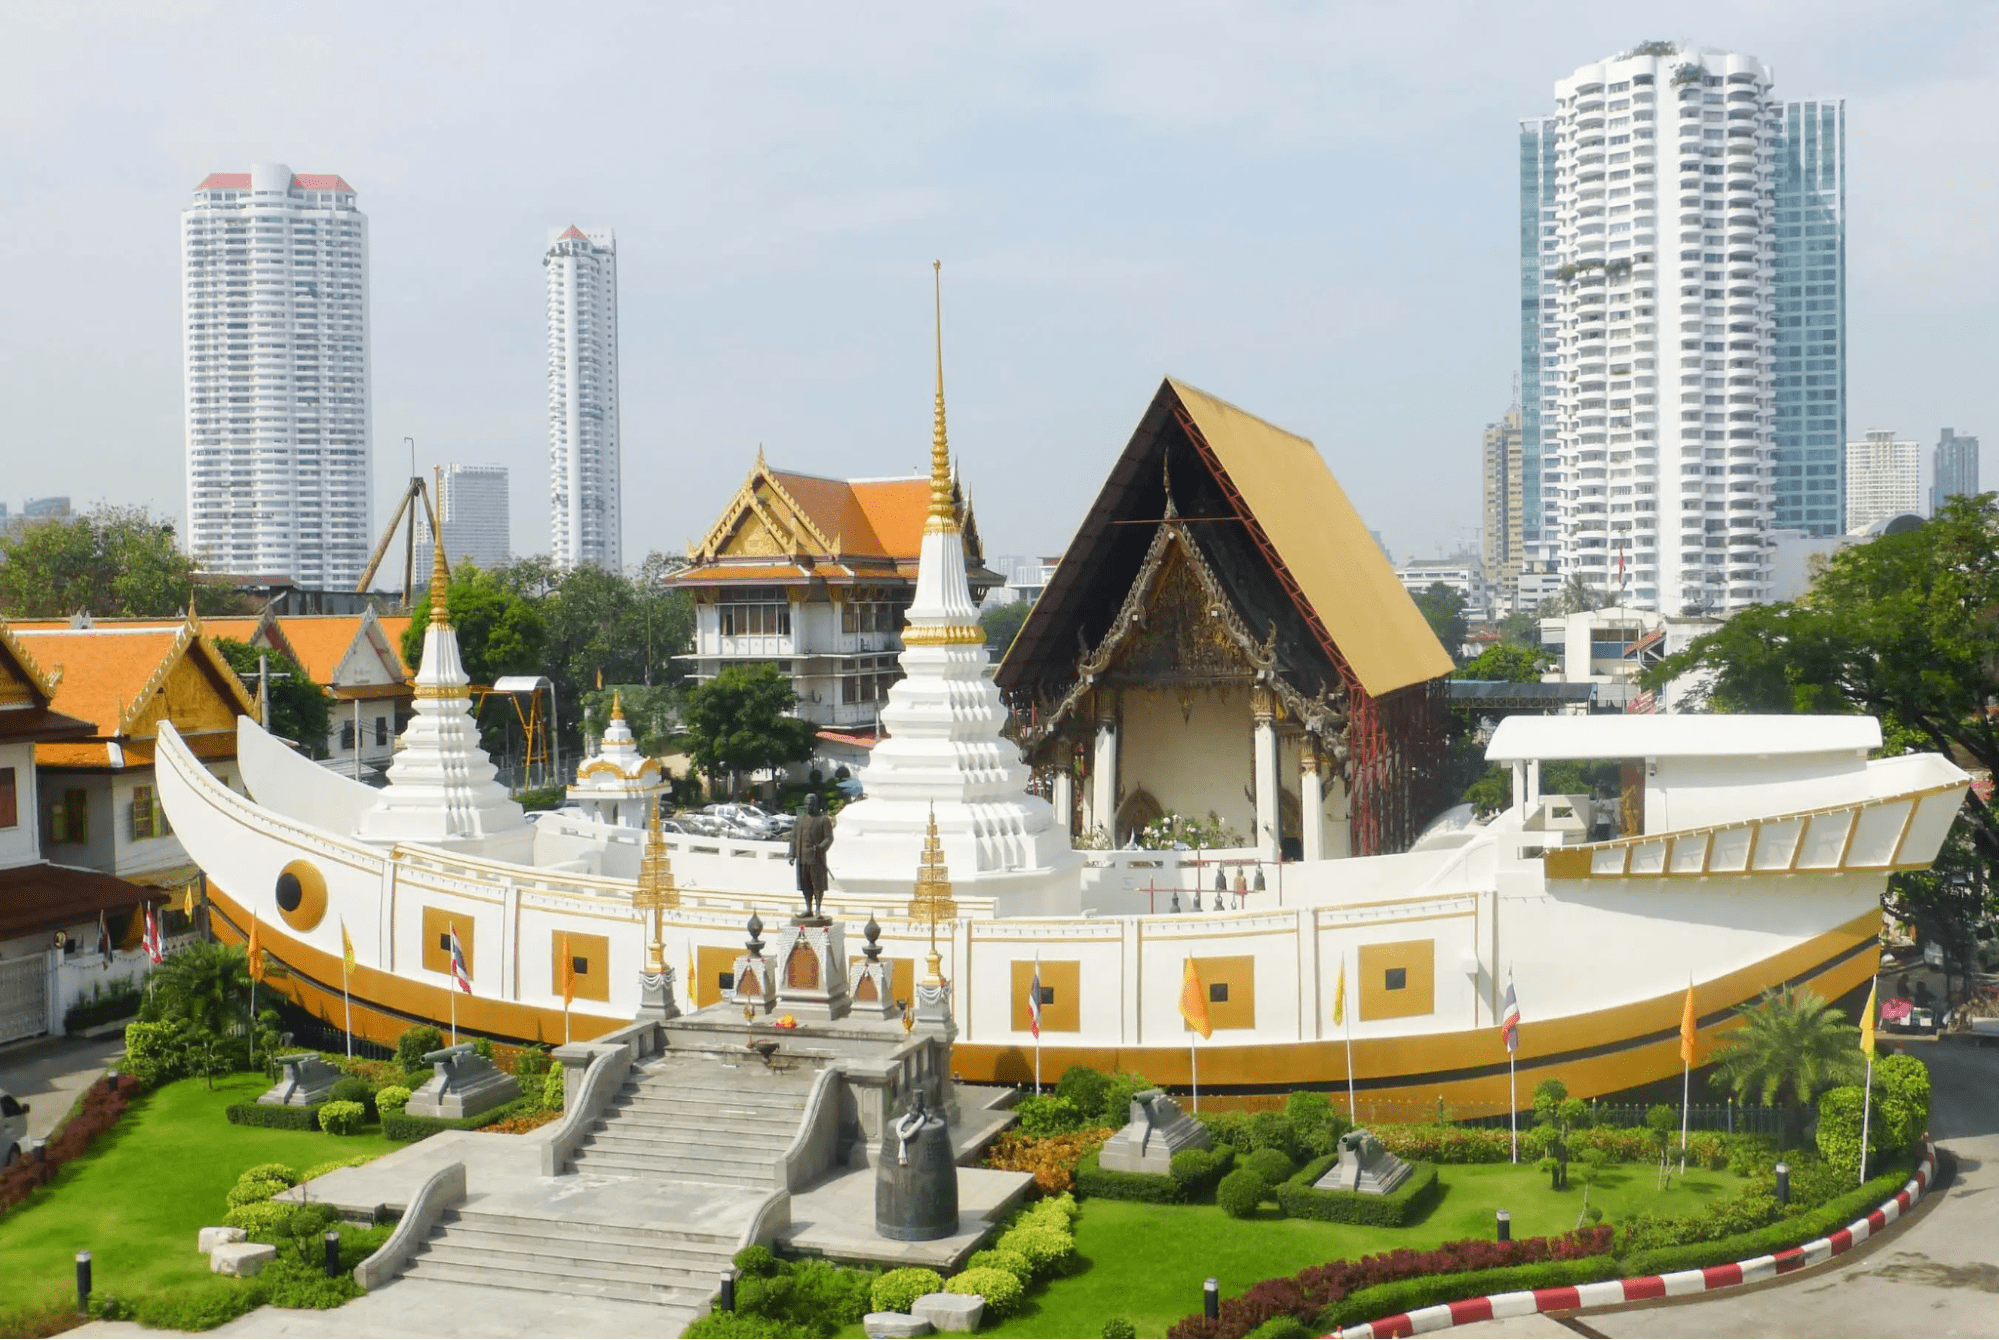 Chùa Thuyền Thái Lan - Wat Yannawa cổ kính giữa lòng thủ đô Bangkok